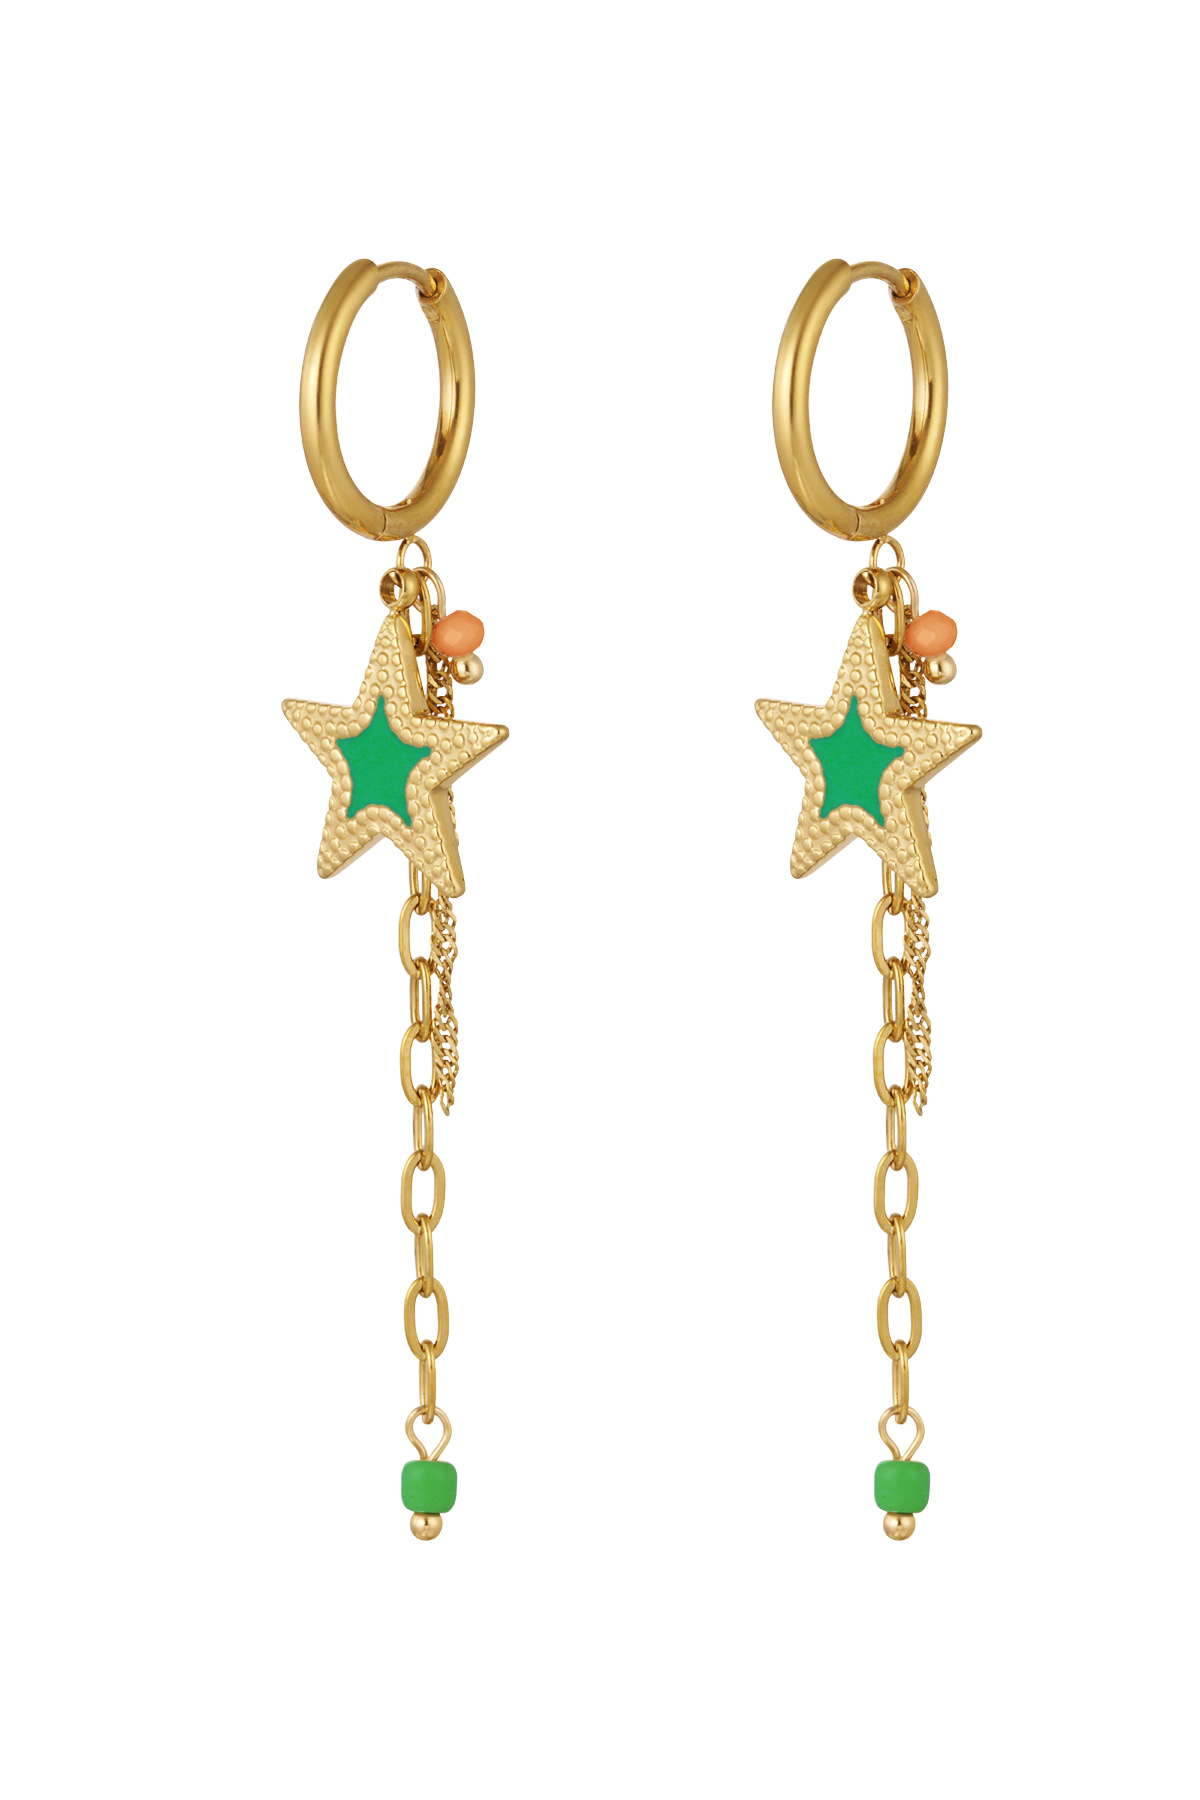 Ohrringe mit Kette und Stern grün - gold